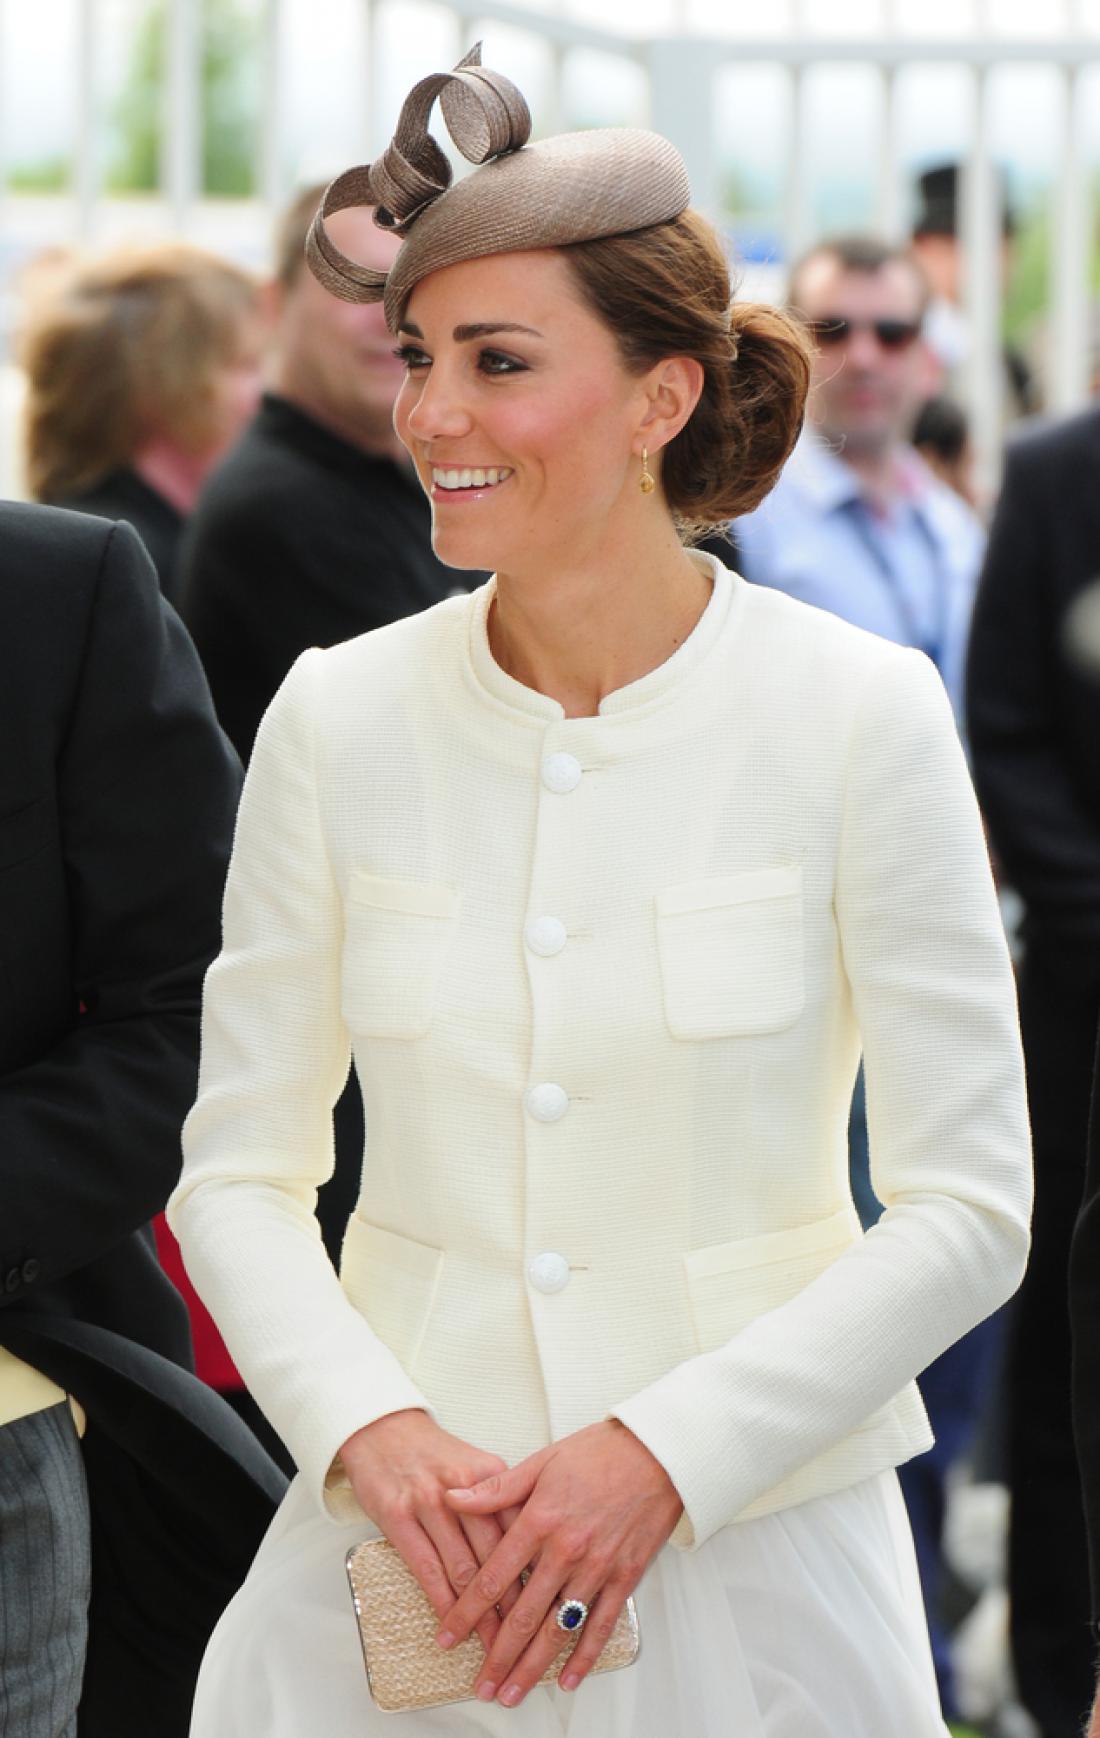 Zakaj na rokah vojvodinje Kate ni barvnega laka?